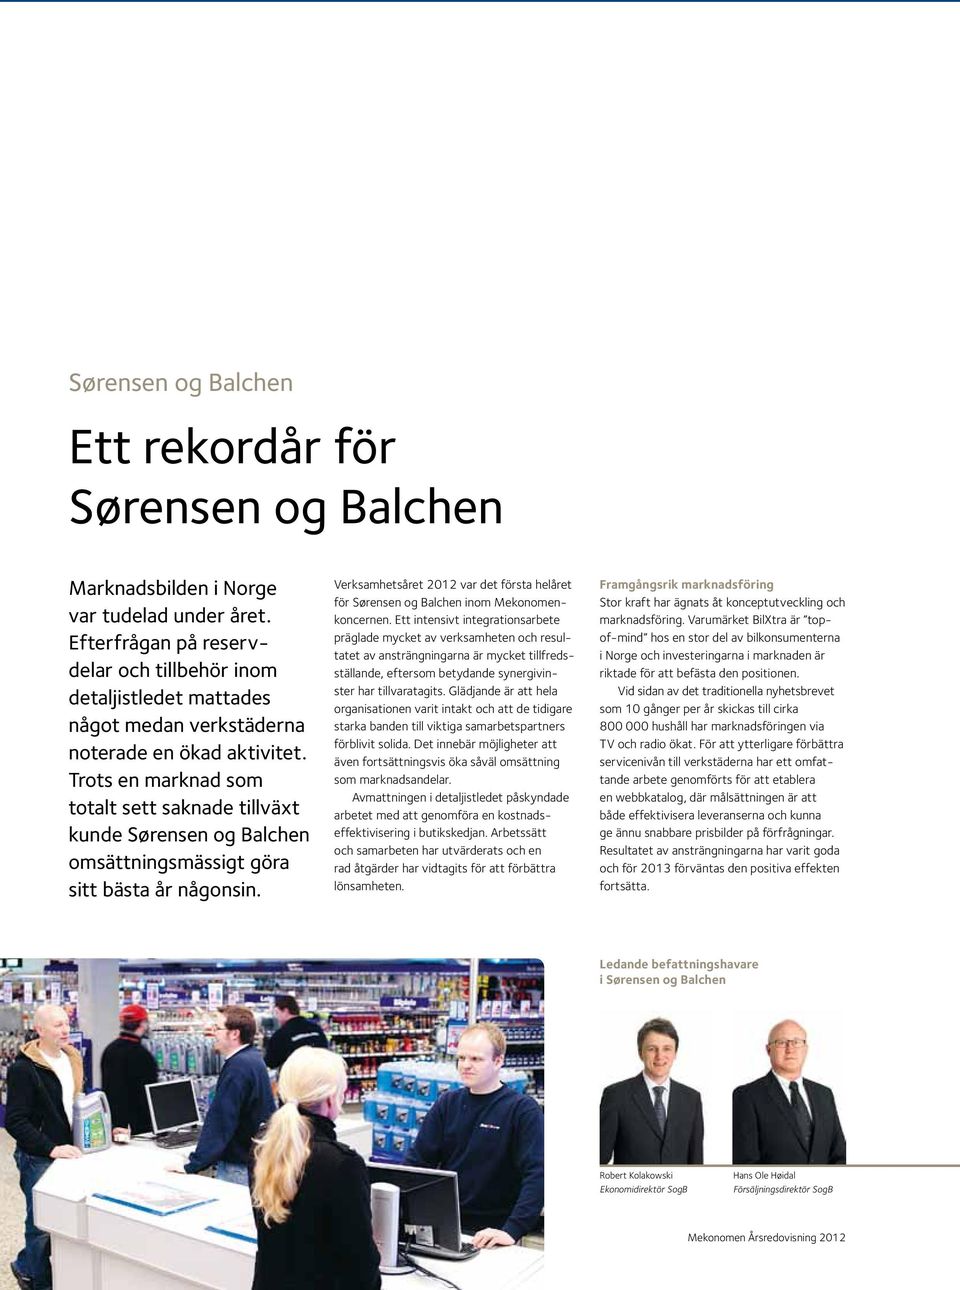 Trots en marknad som totalt sett saknade tillväxt kunde Sørensen og Balchen omsättningsmässigt göra sitt bästa år någonsin.